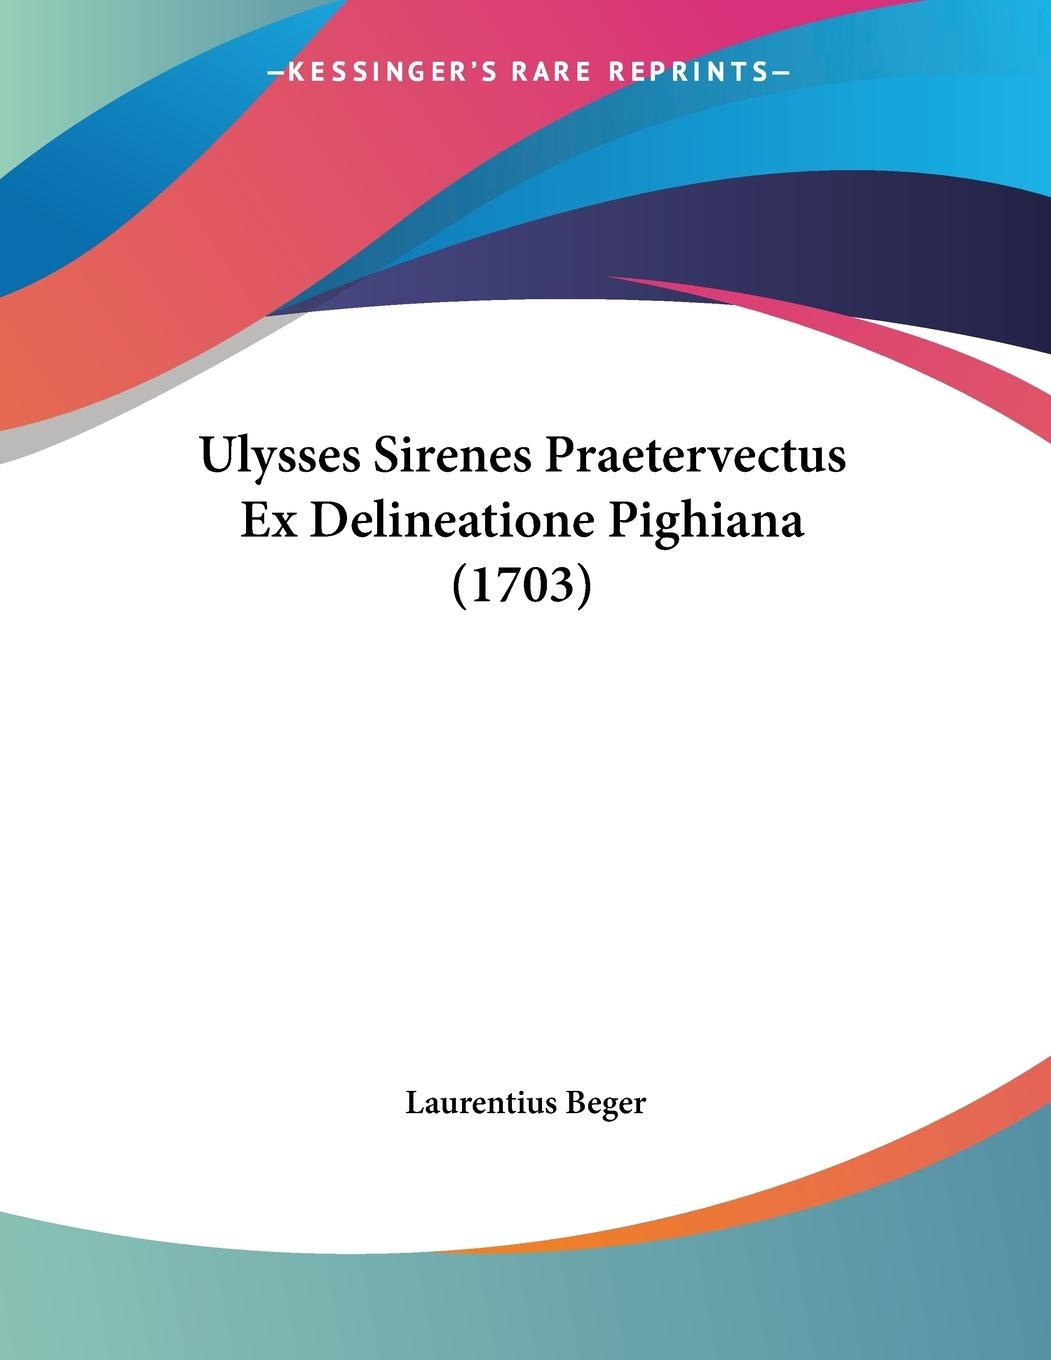 Ulysses Sirenes Praetervectus Ex Delineatione Pighiana (1703) - Beger, Laurentius